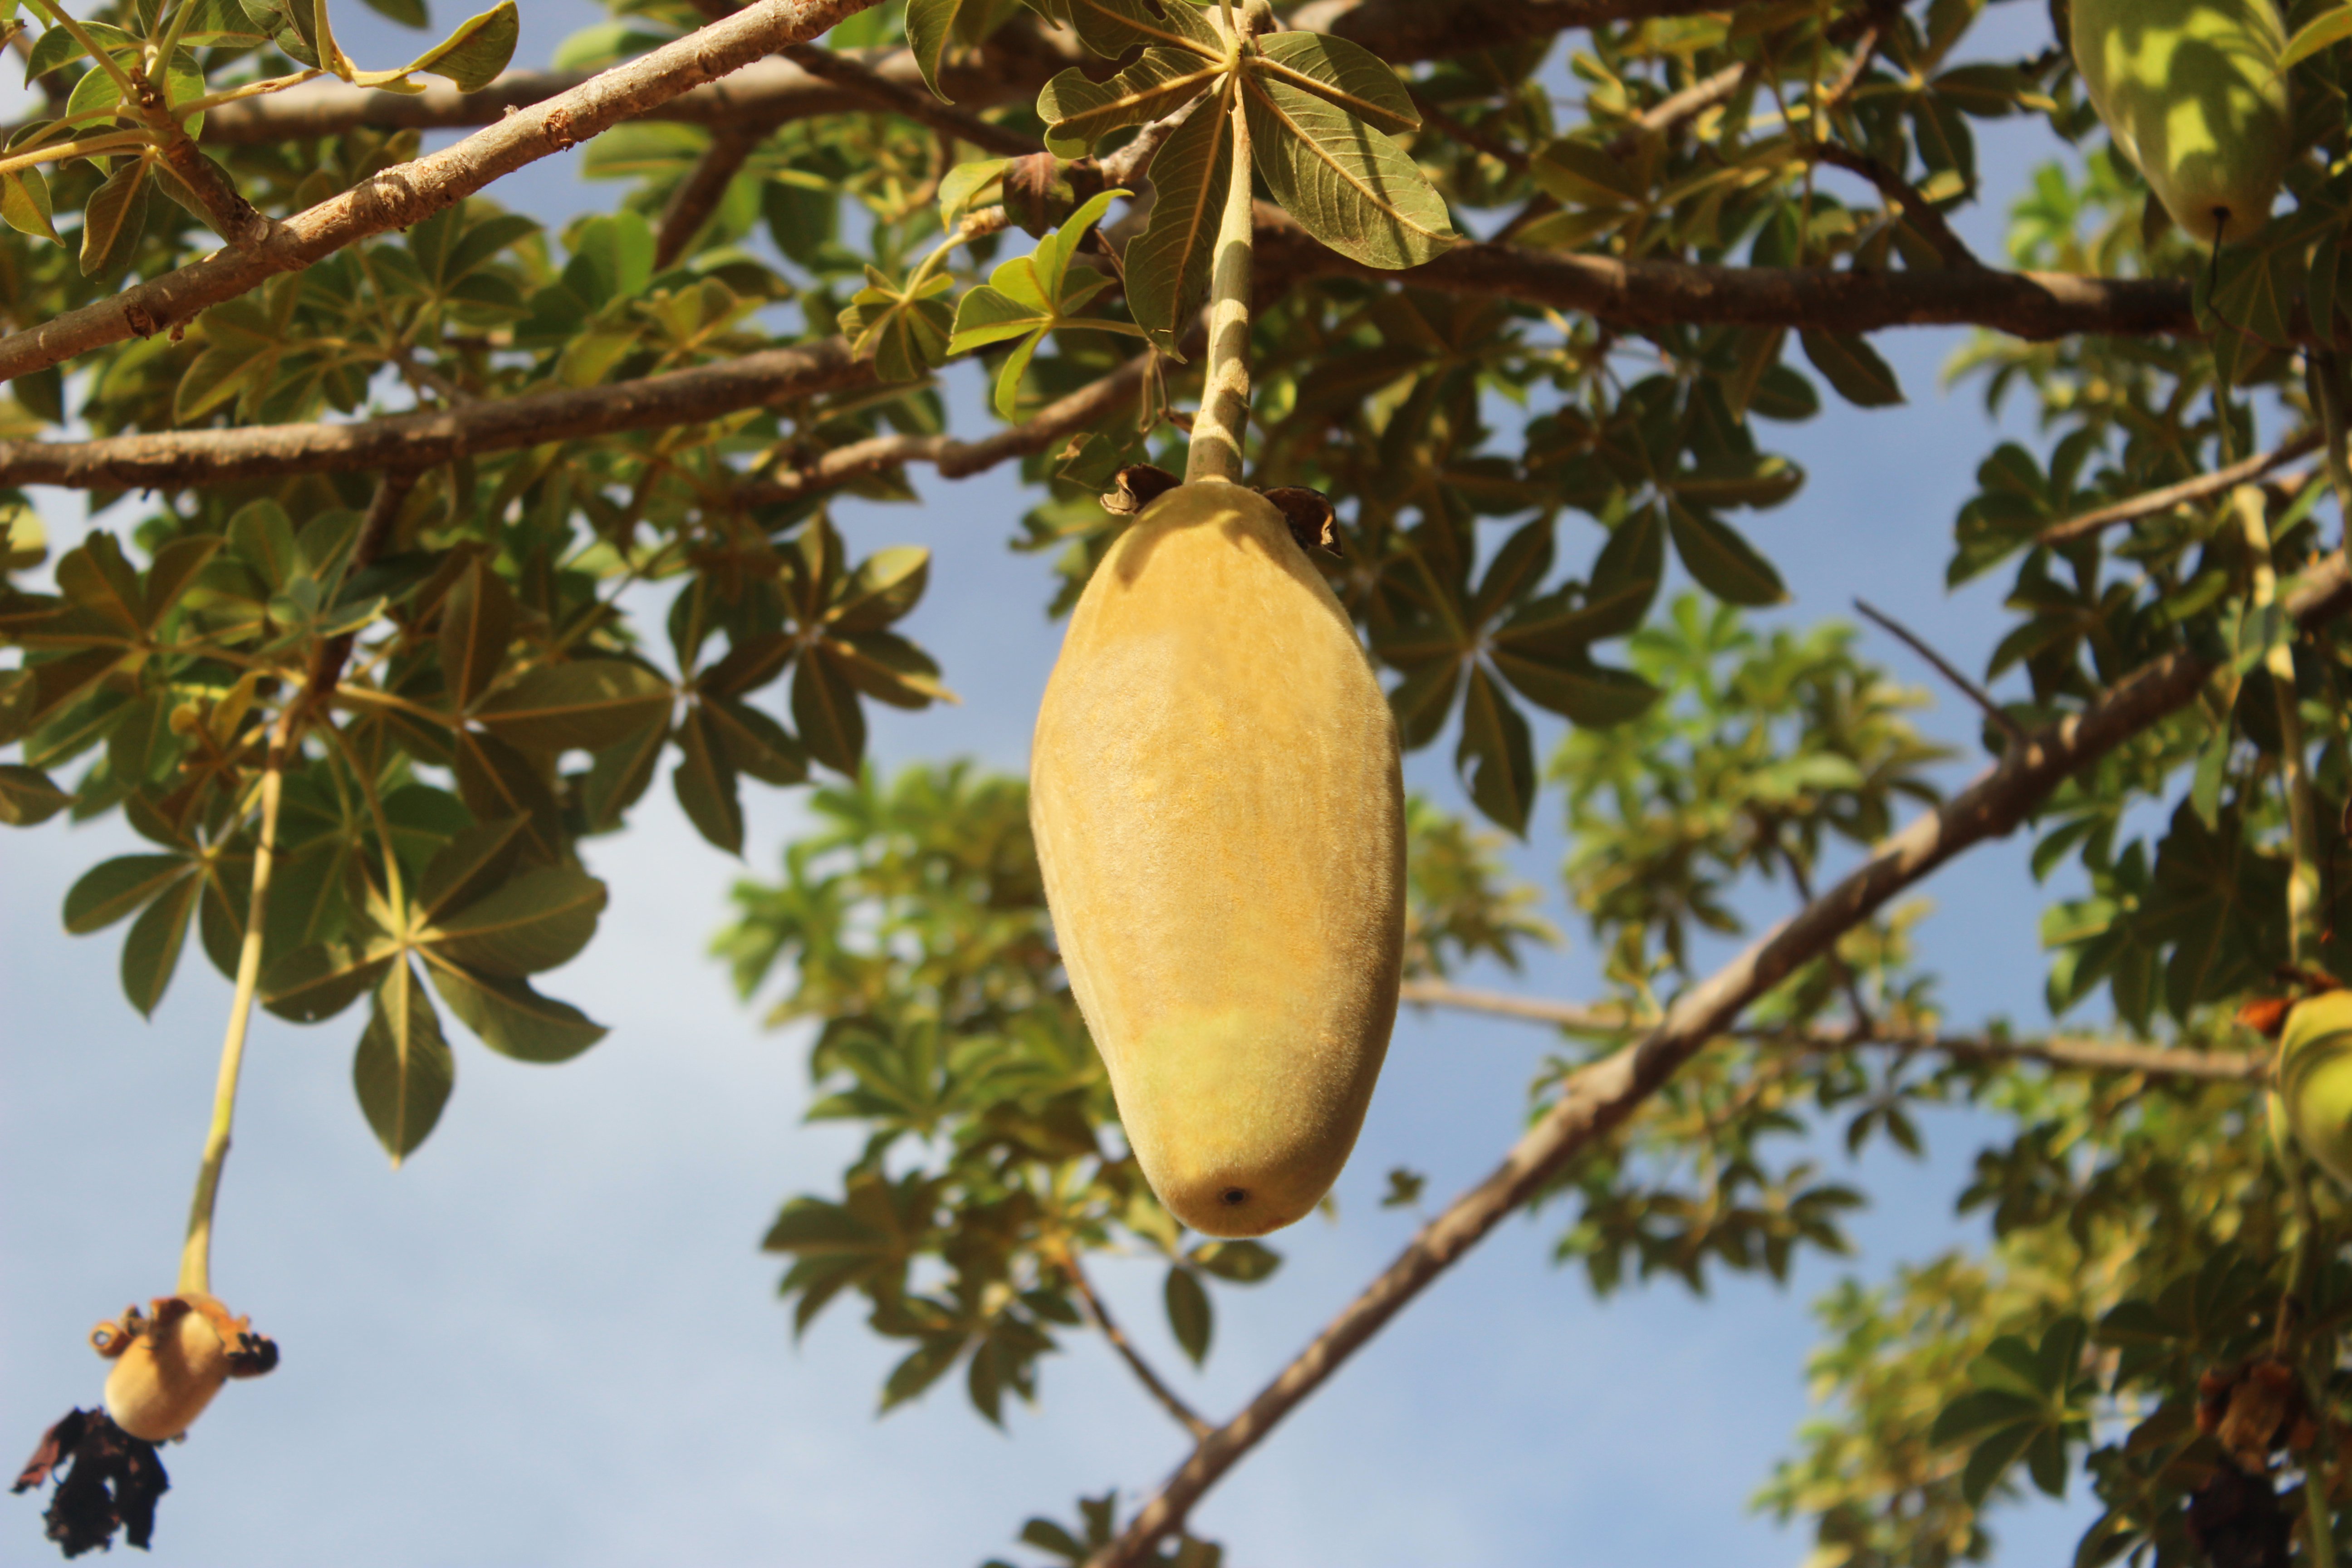 baobab fruit on tree